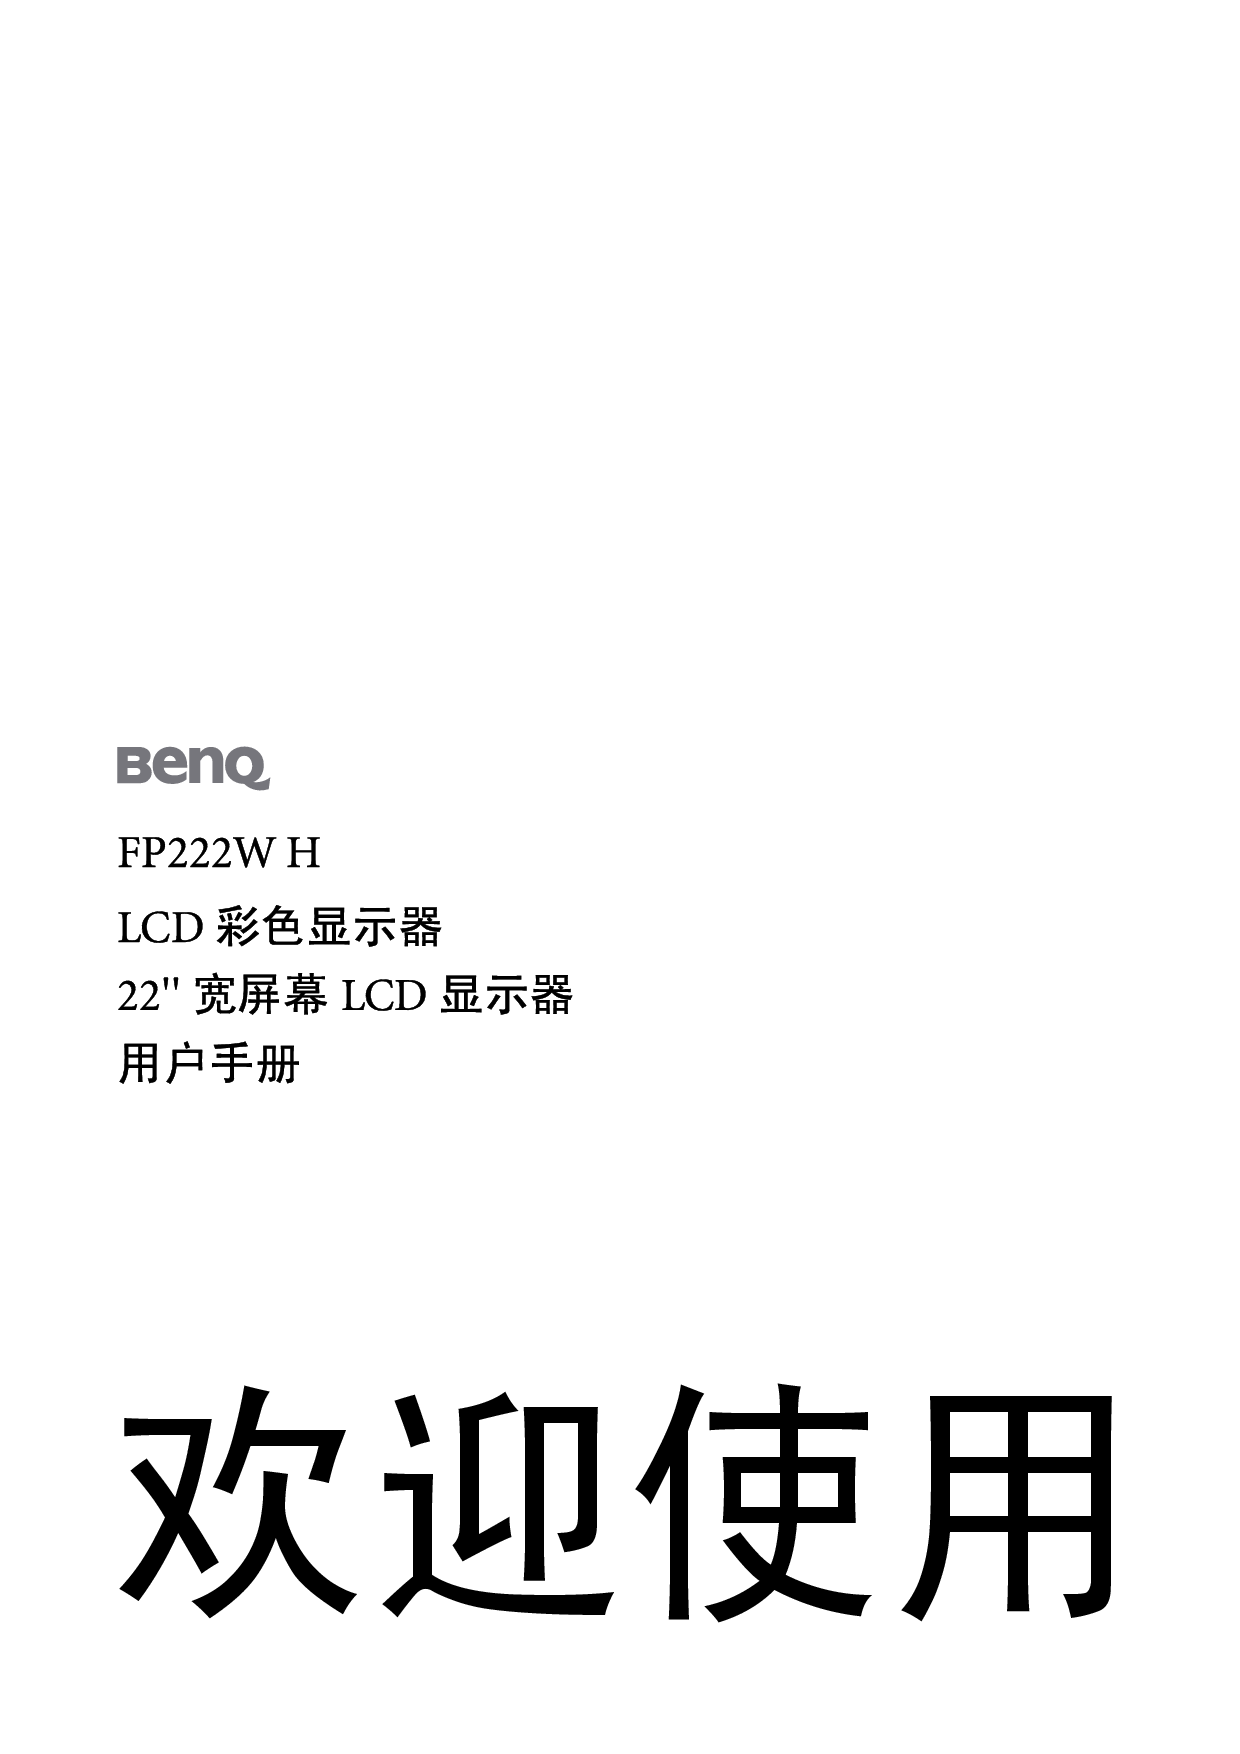 明基 Benq FP222W H 使用手册 封面